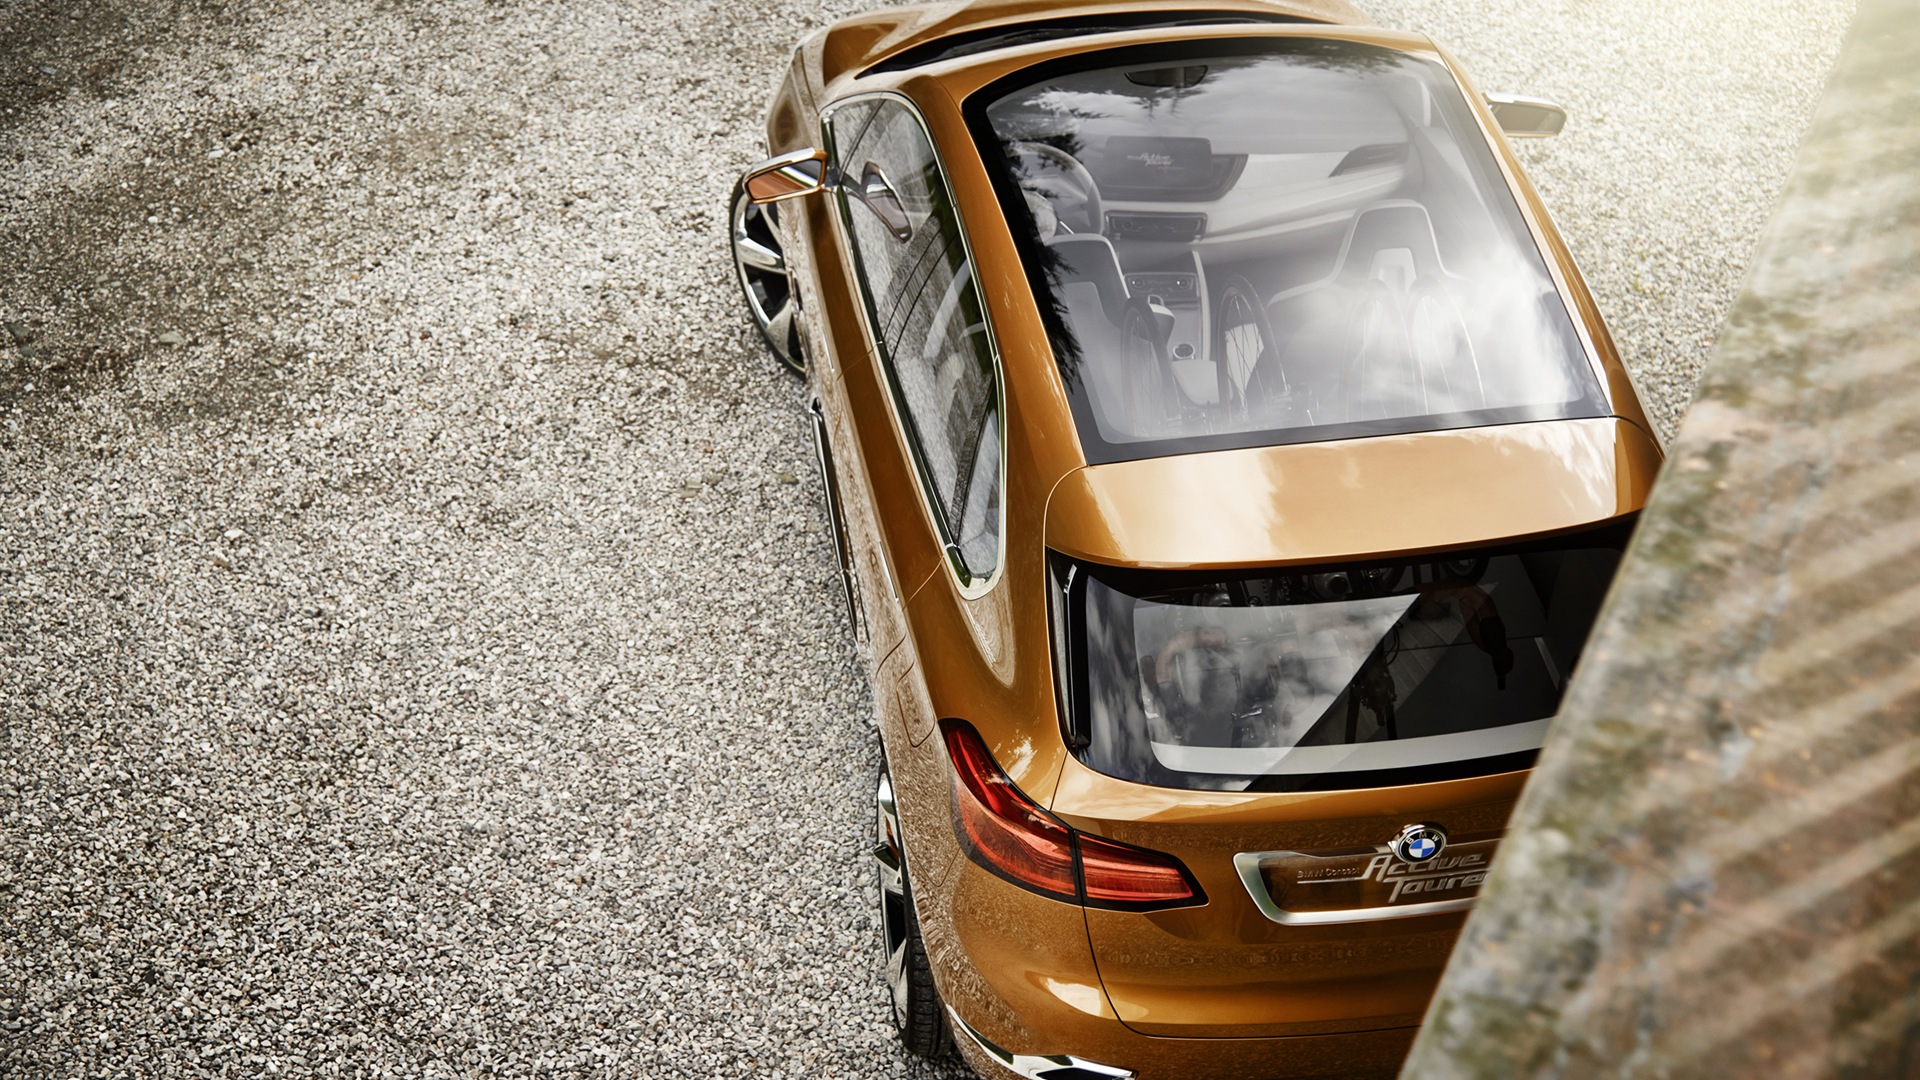 2013 BMW Concept Aktive Tourer HD Wallpaper #12 - 1920x1080